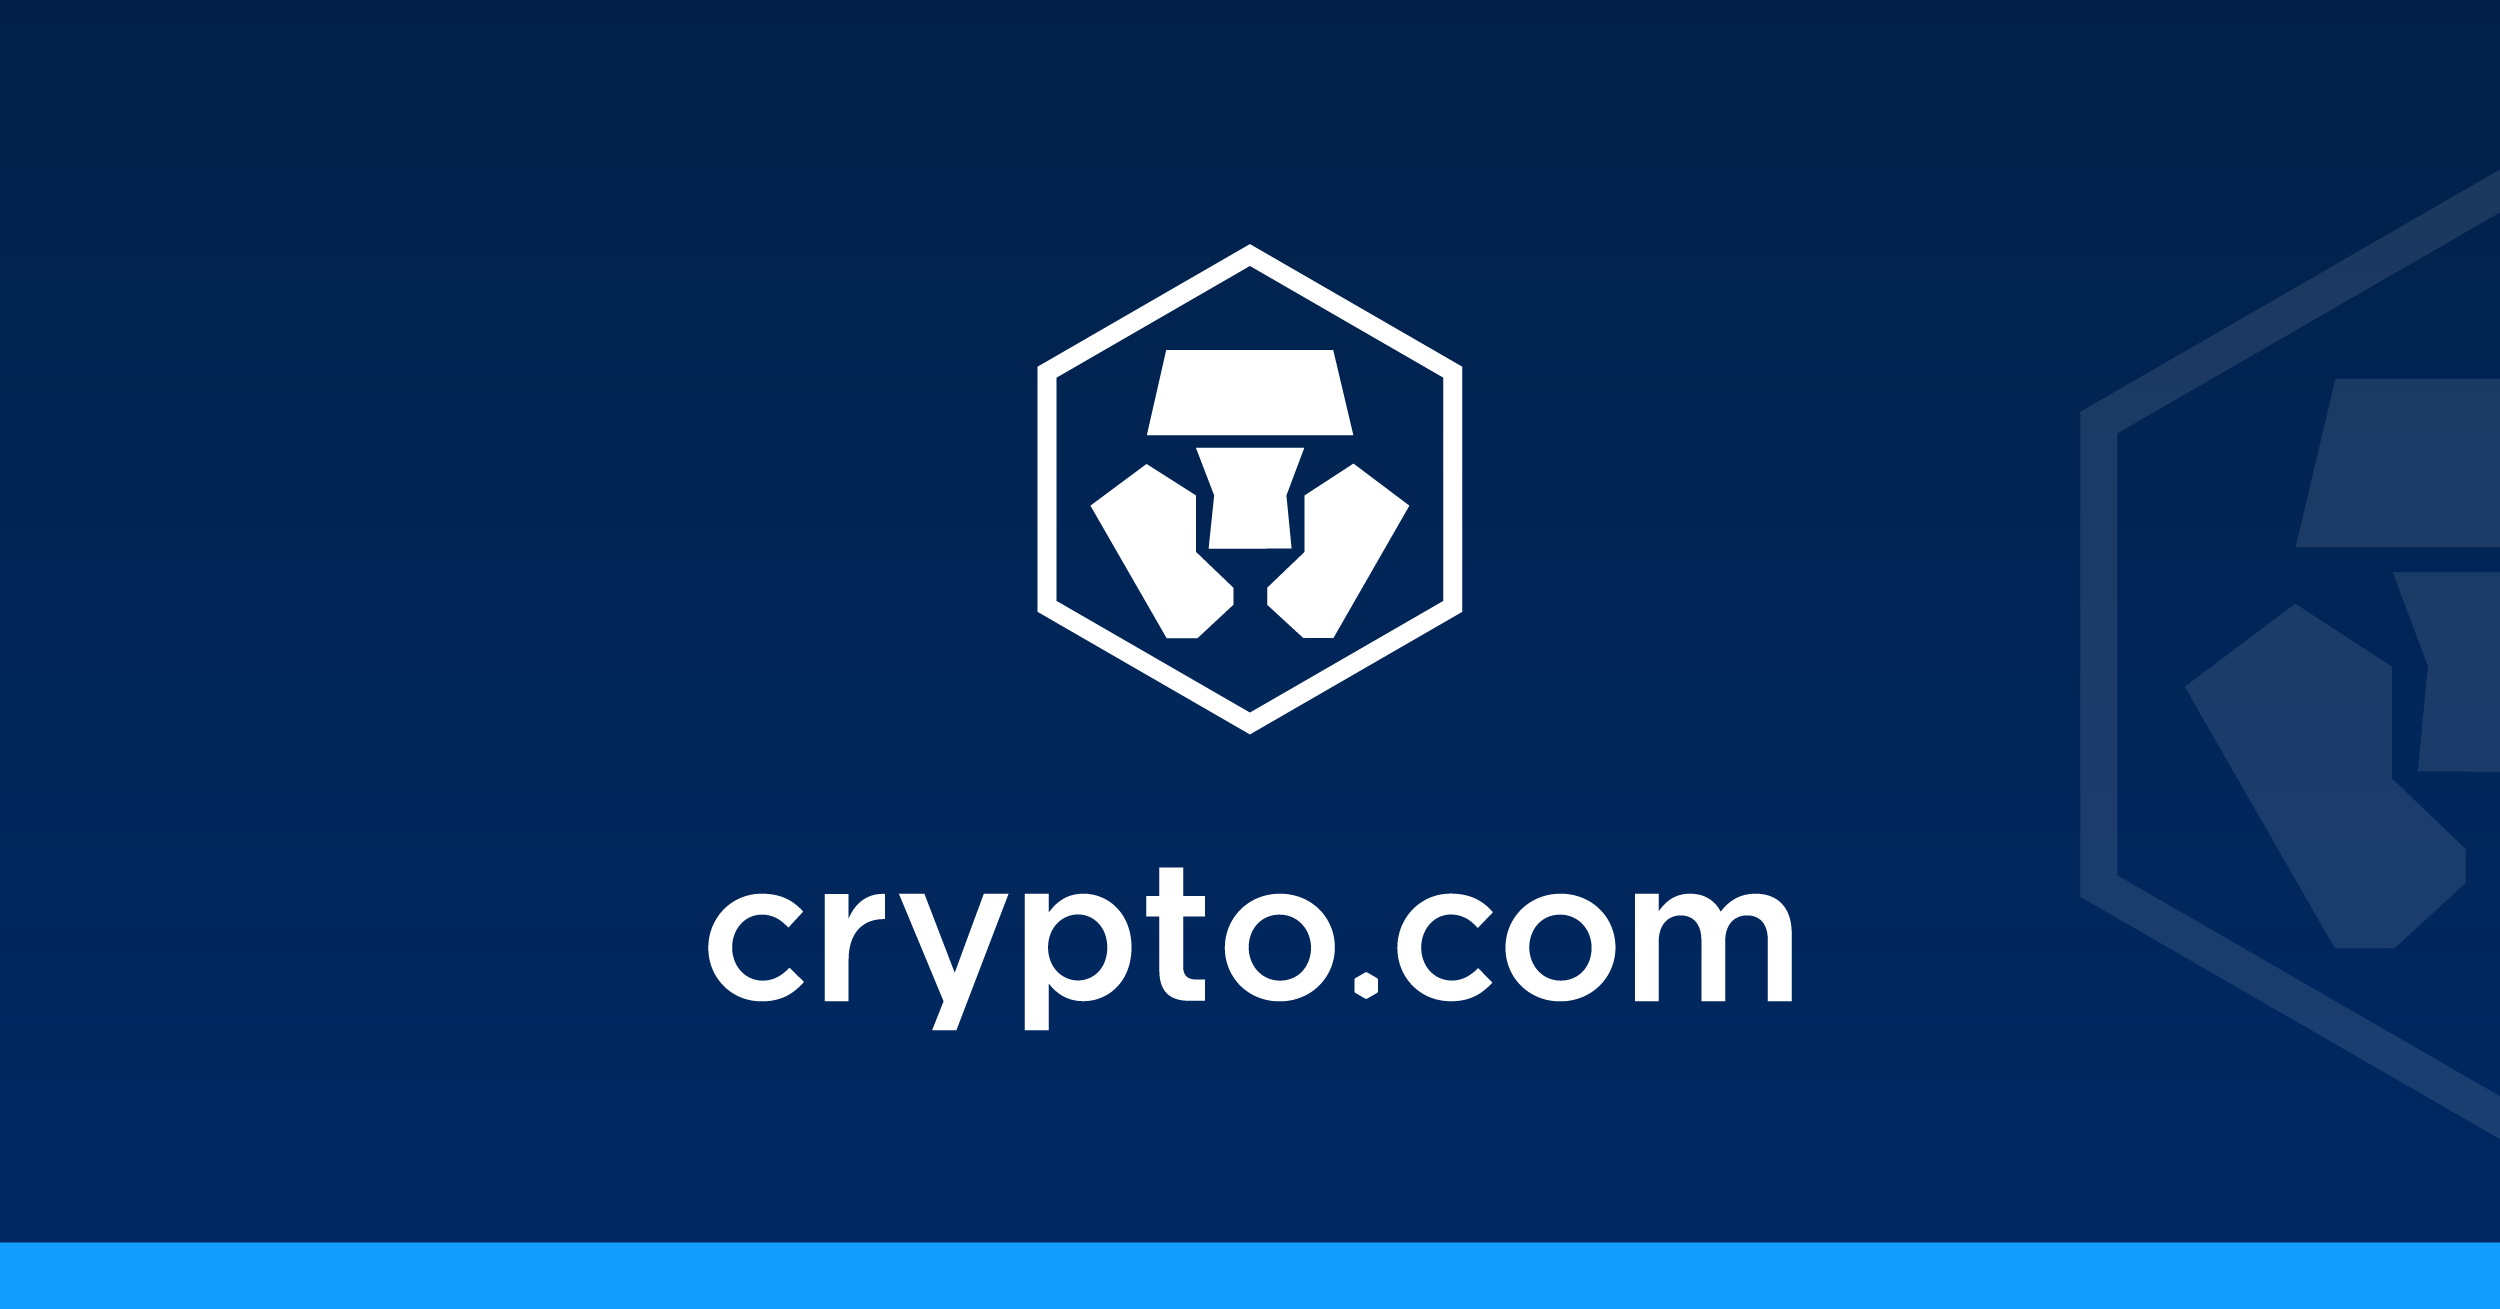 加密货币交易所Crypto.com突破5000万用户大关